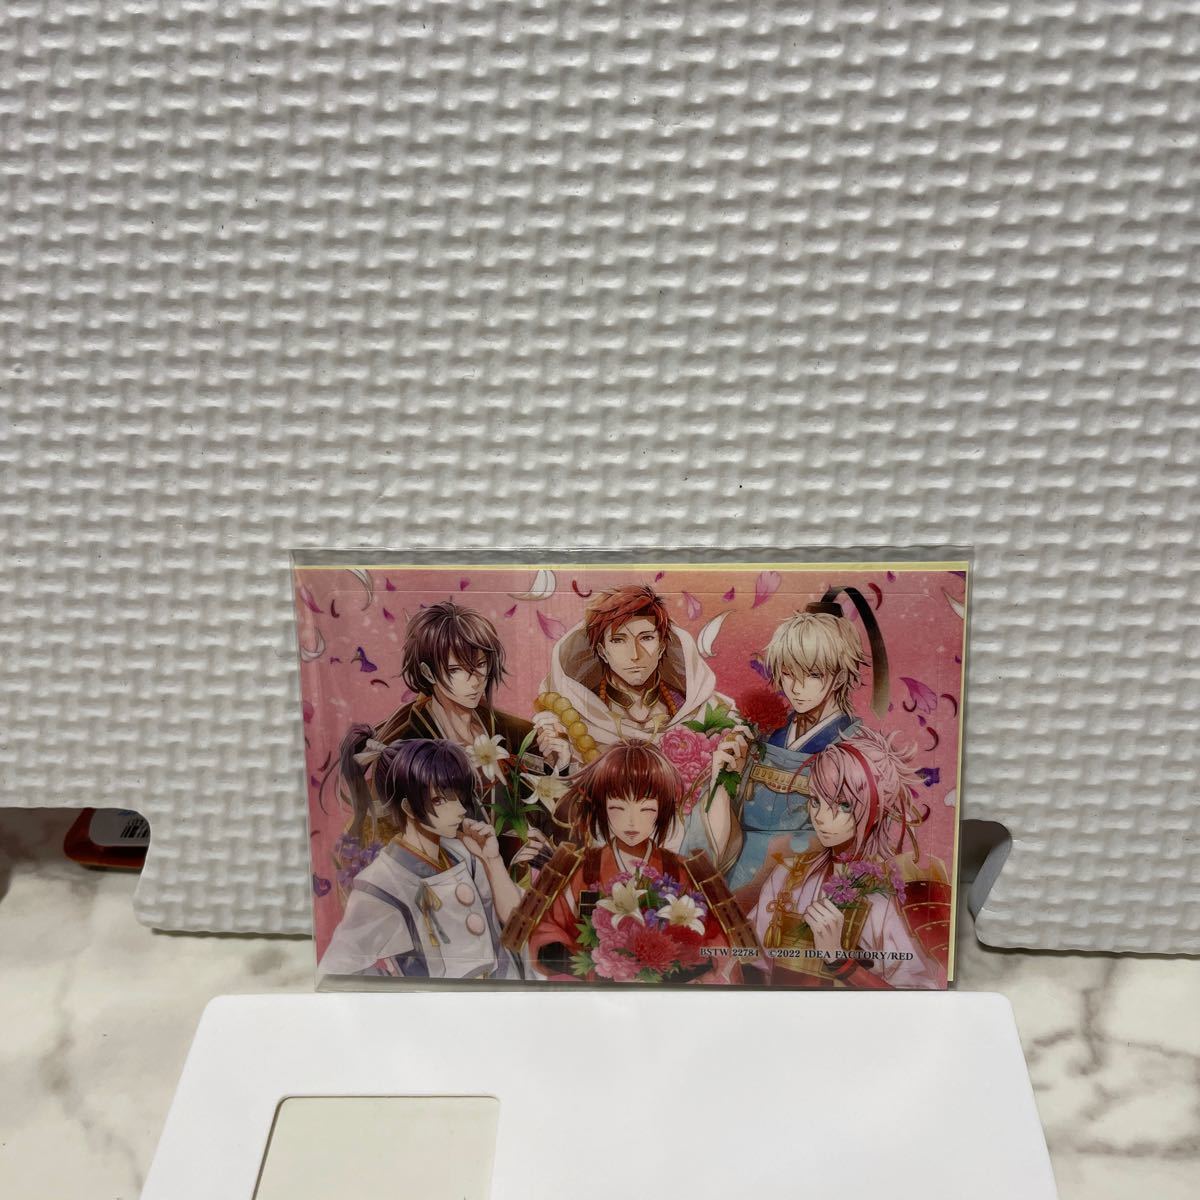 ビルシャナ戦姫 ツインパック 【Amazon.co.jp限定】ICカードステッカー& 予約特典(ドラマCD) ソフトなし